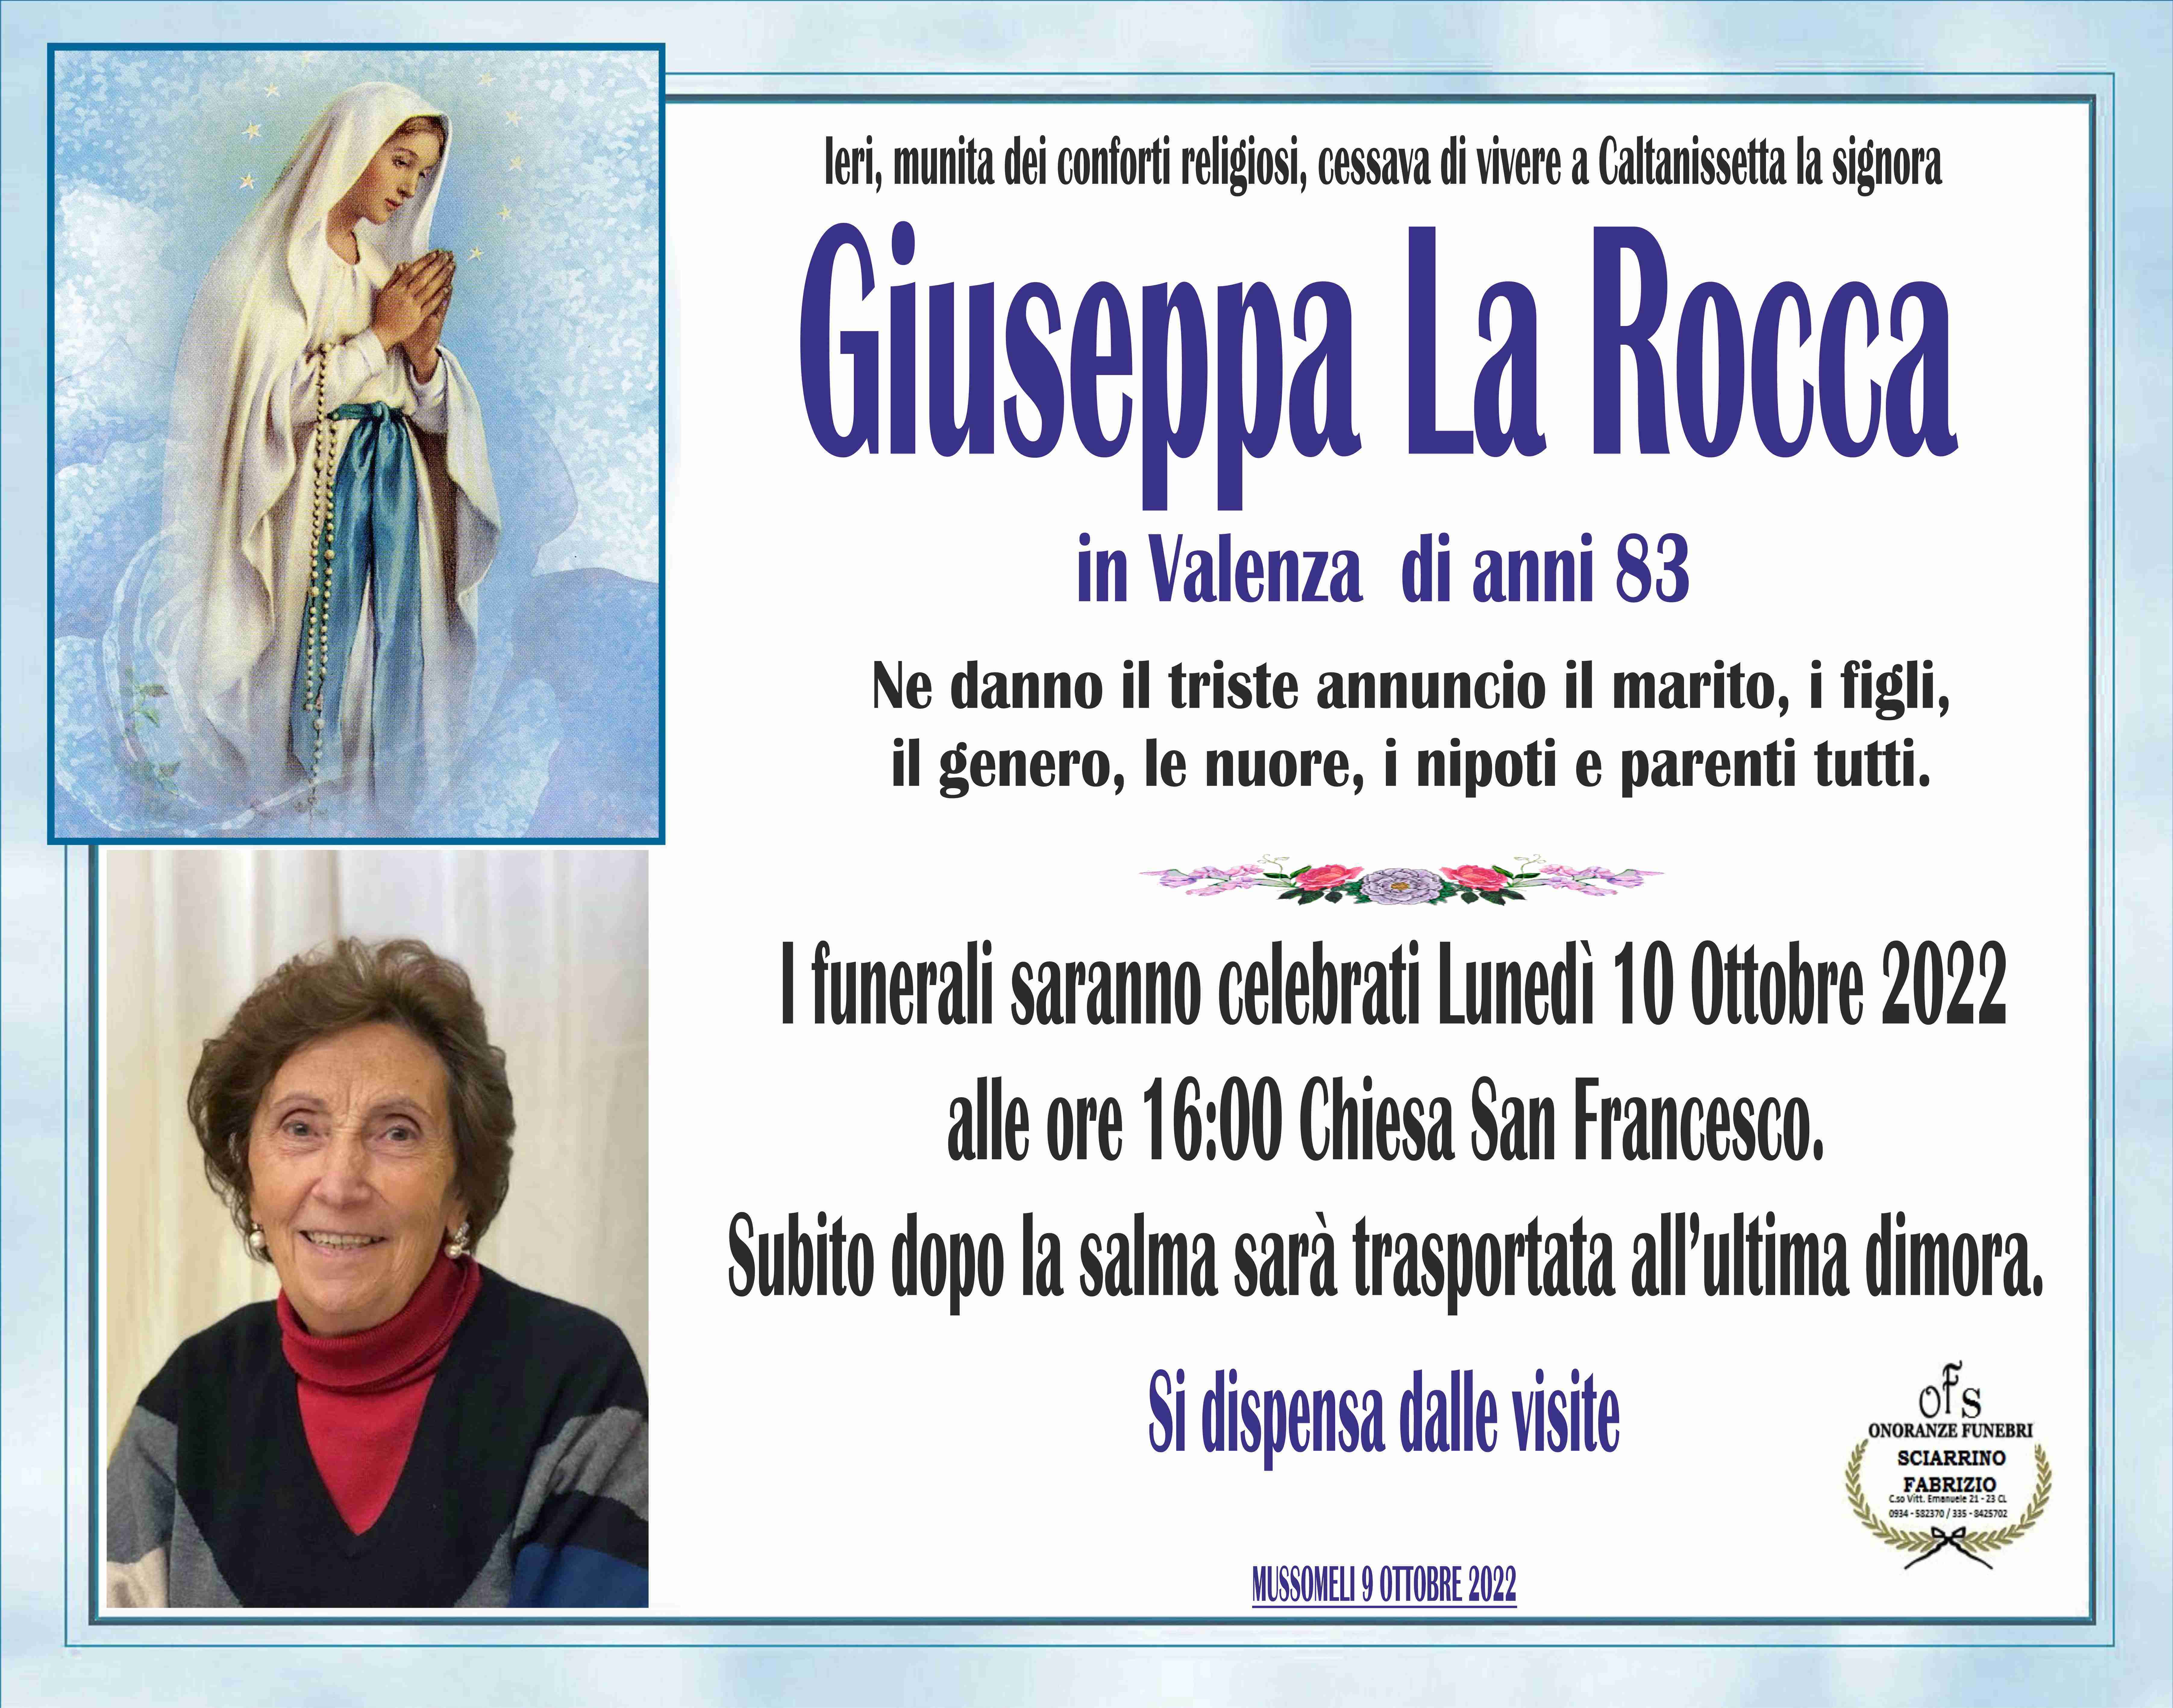 Giuseppa La Rocca